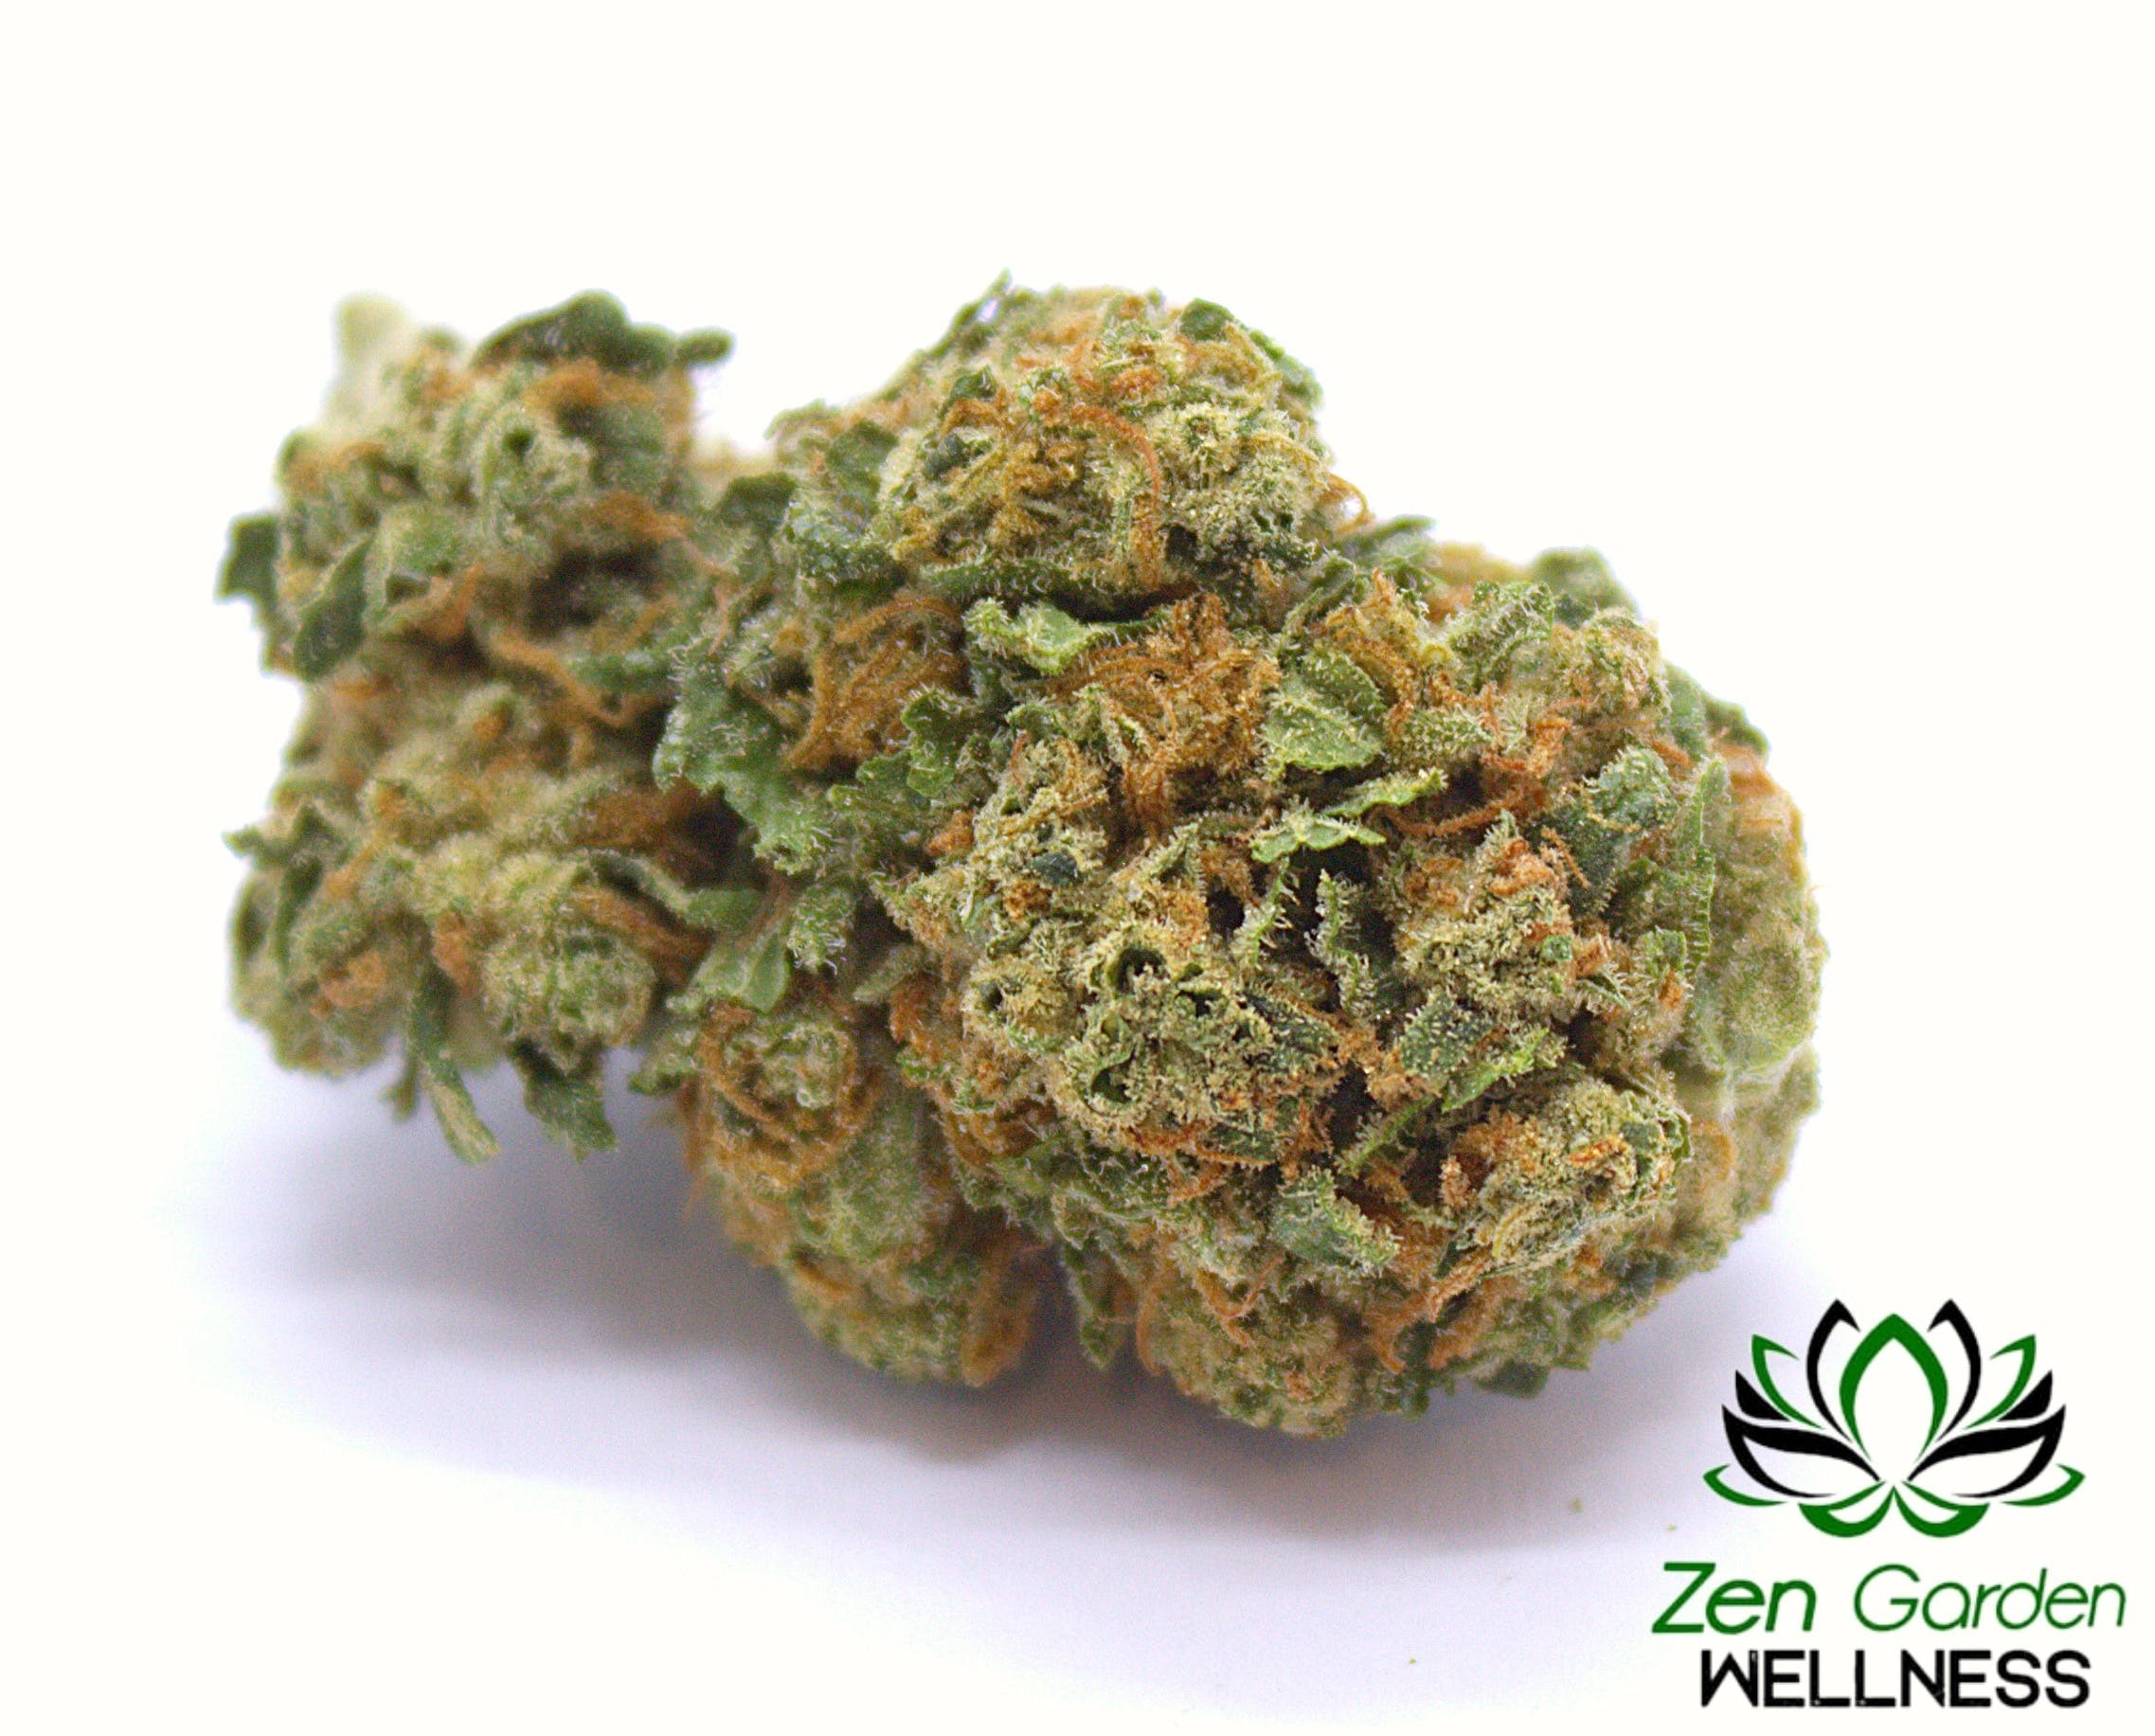 marijuana-dispensaries-zen-garden-wellness-in-stockton-the-weed-brand-sauce